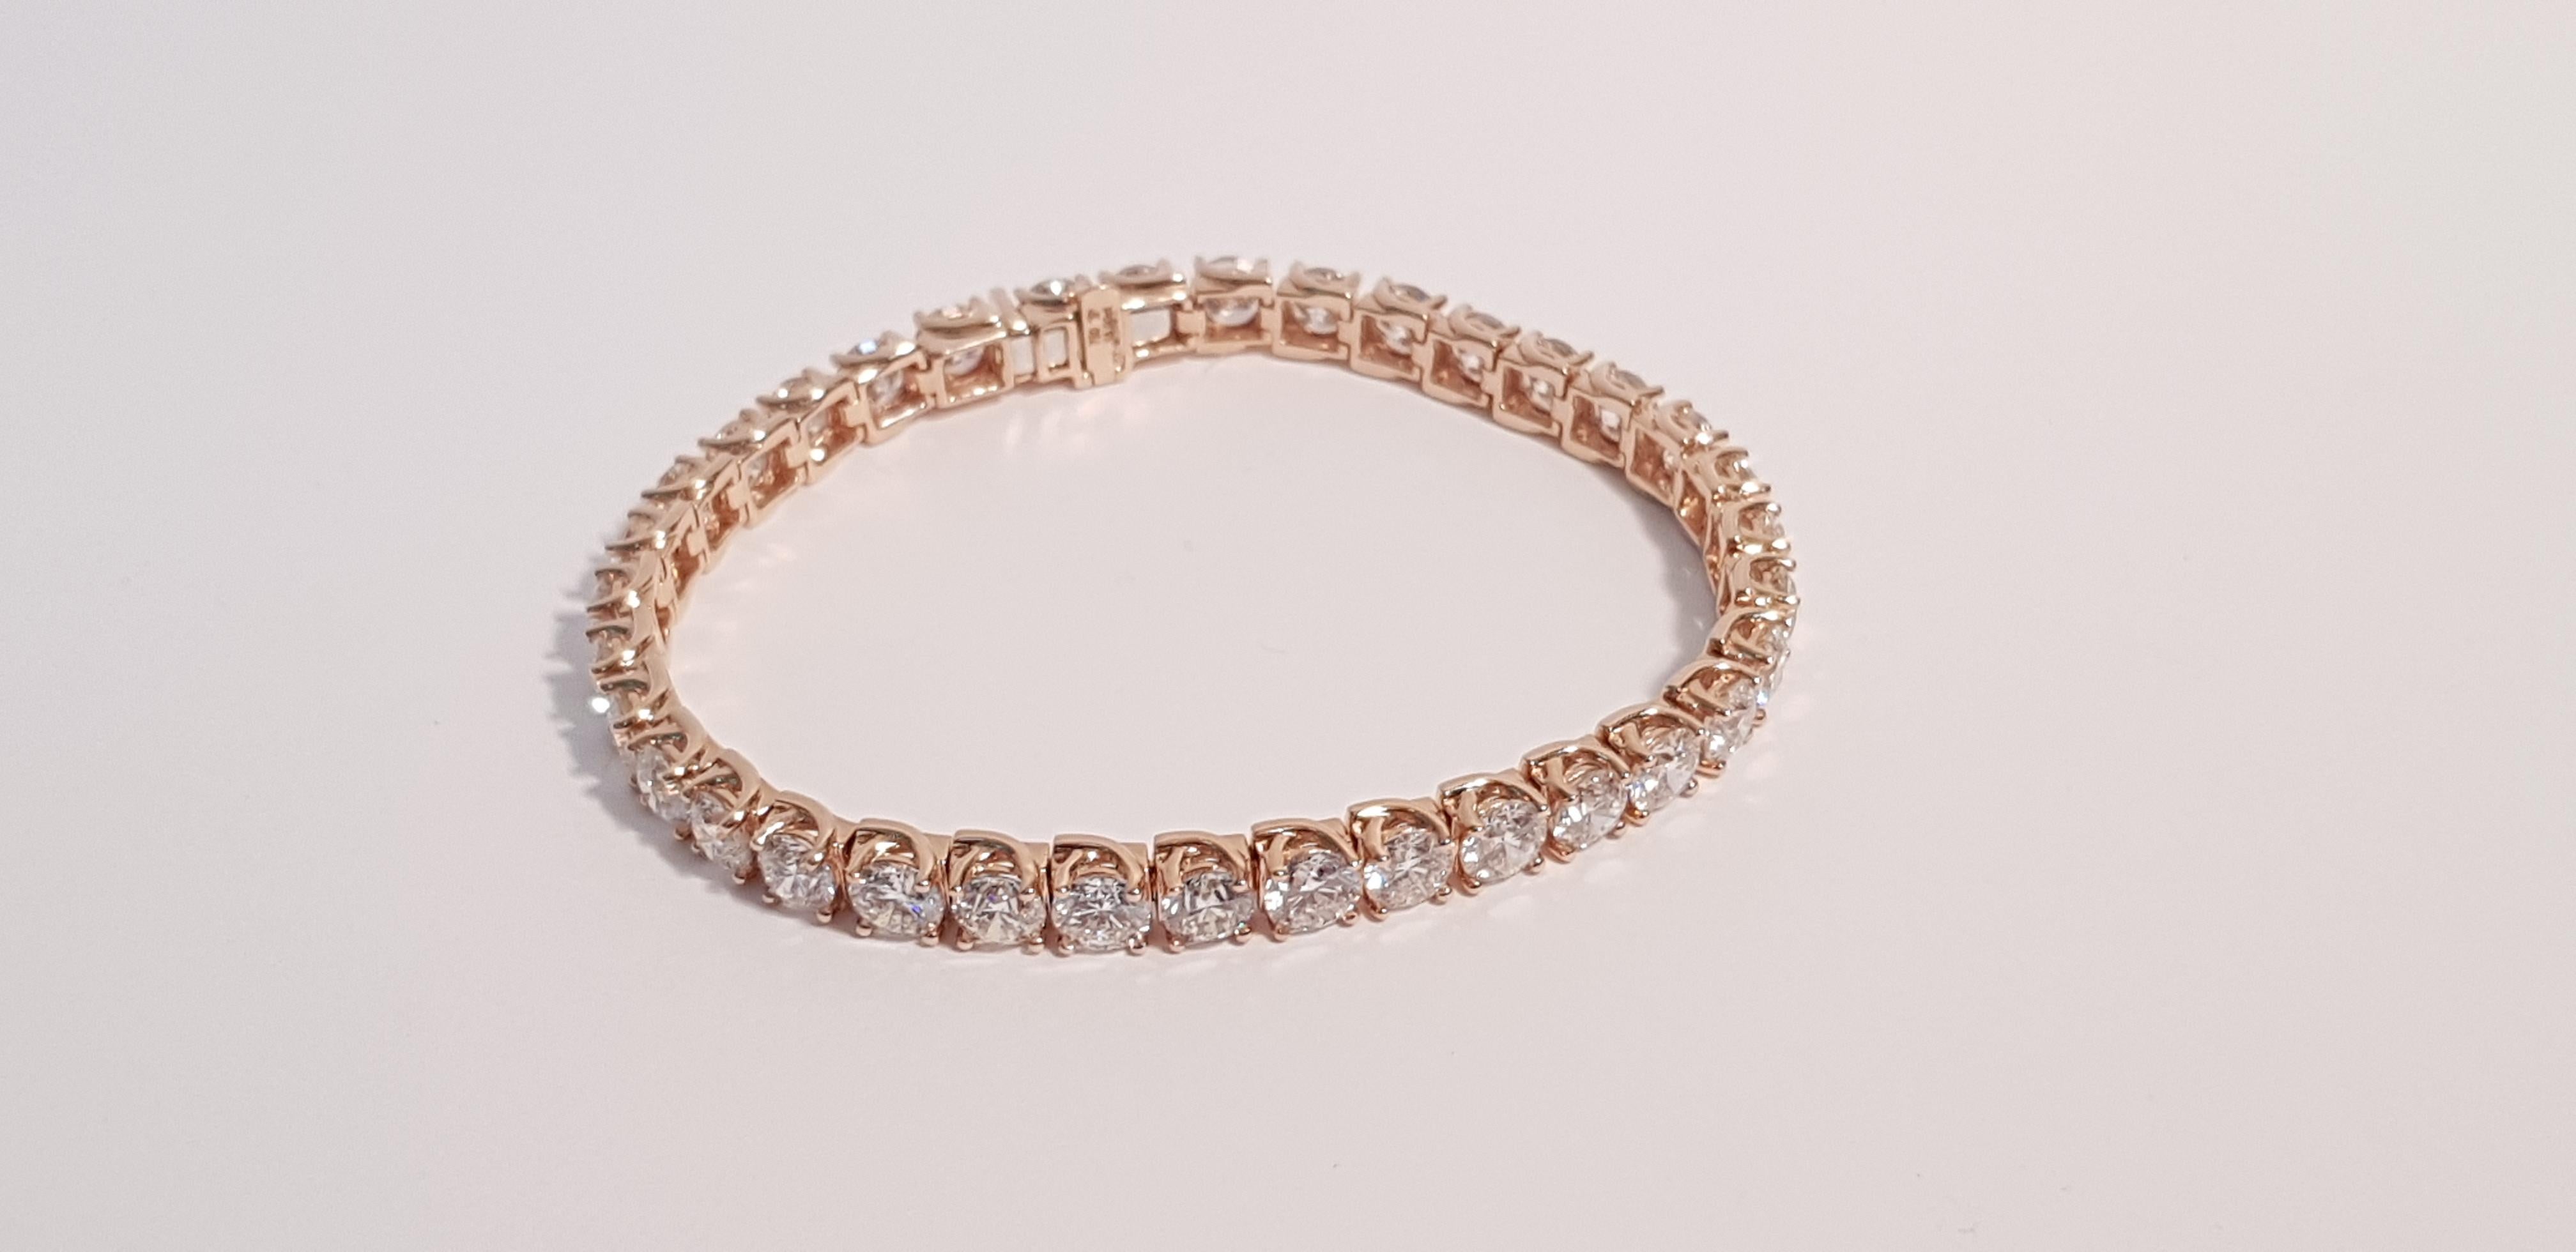 18 carat rose gold bracelet